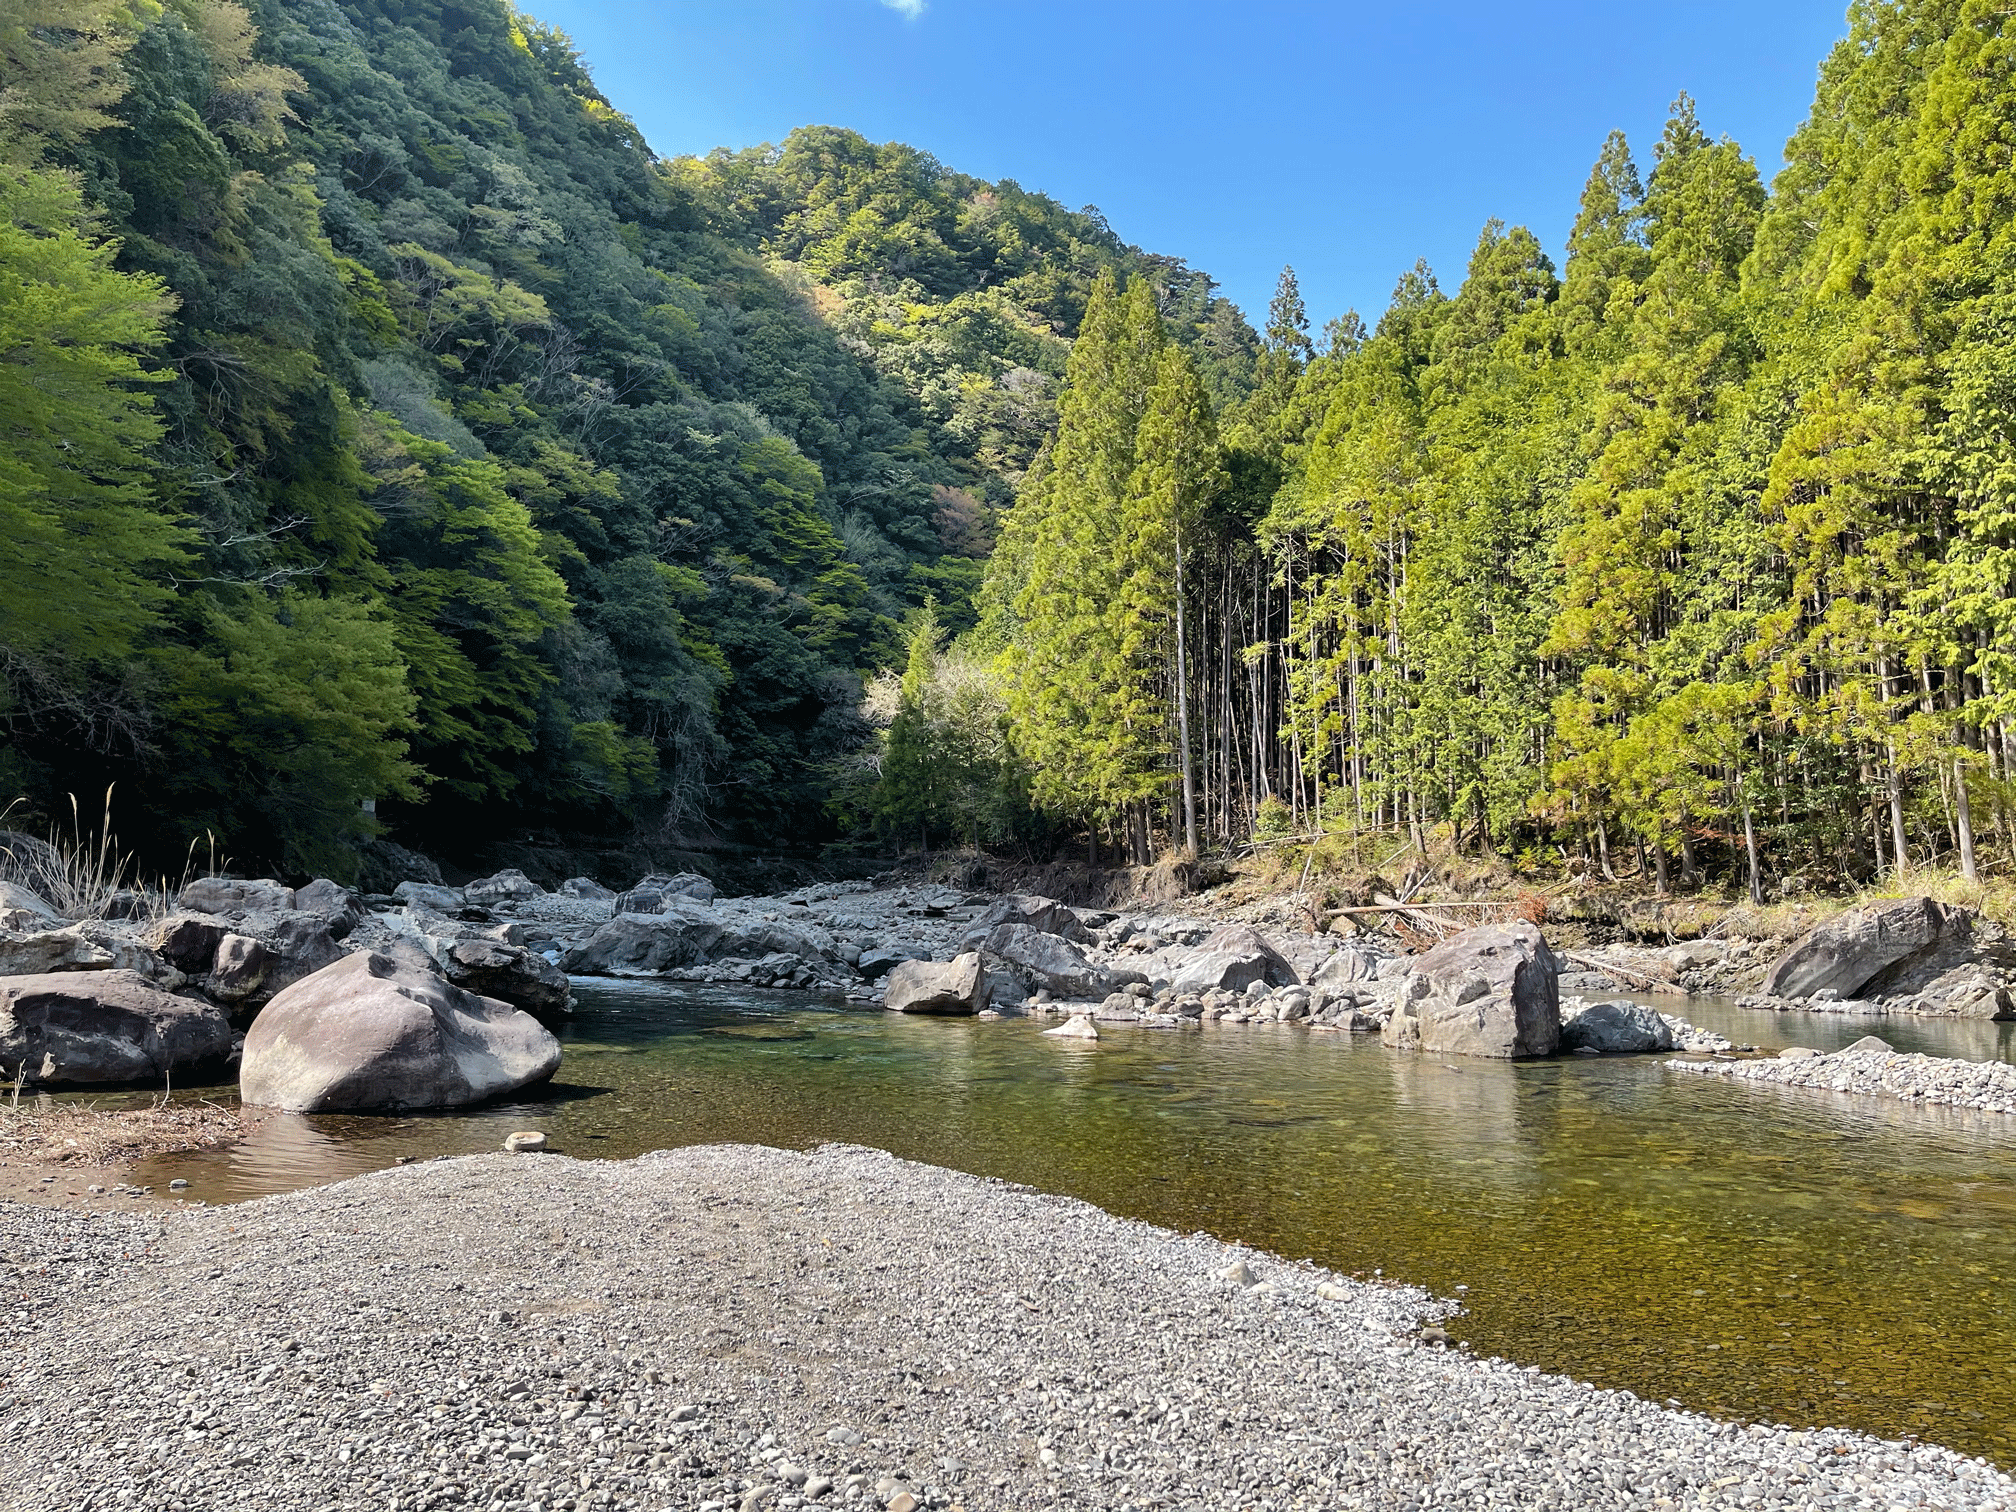 奥熊野温泉 女神の湯 アイリスパークオートキャンプ場 日置川沿いの緑あふれるキャンプ場